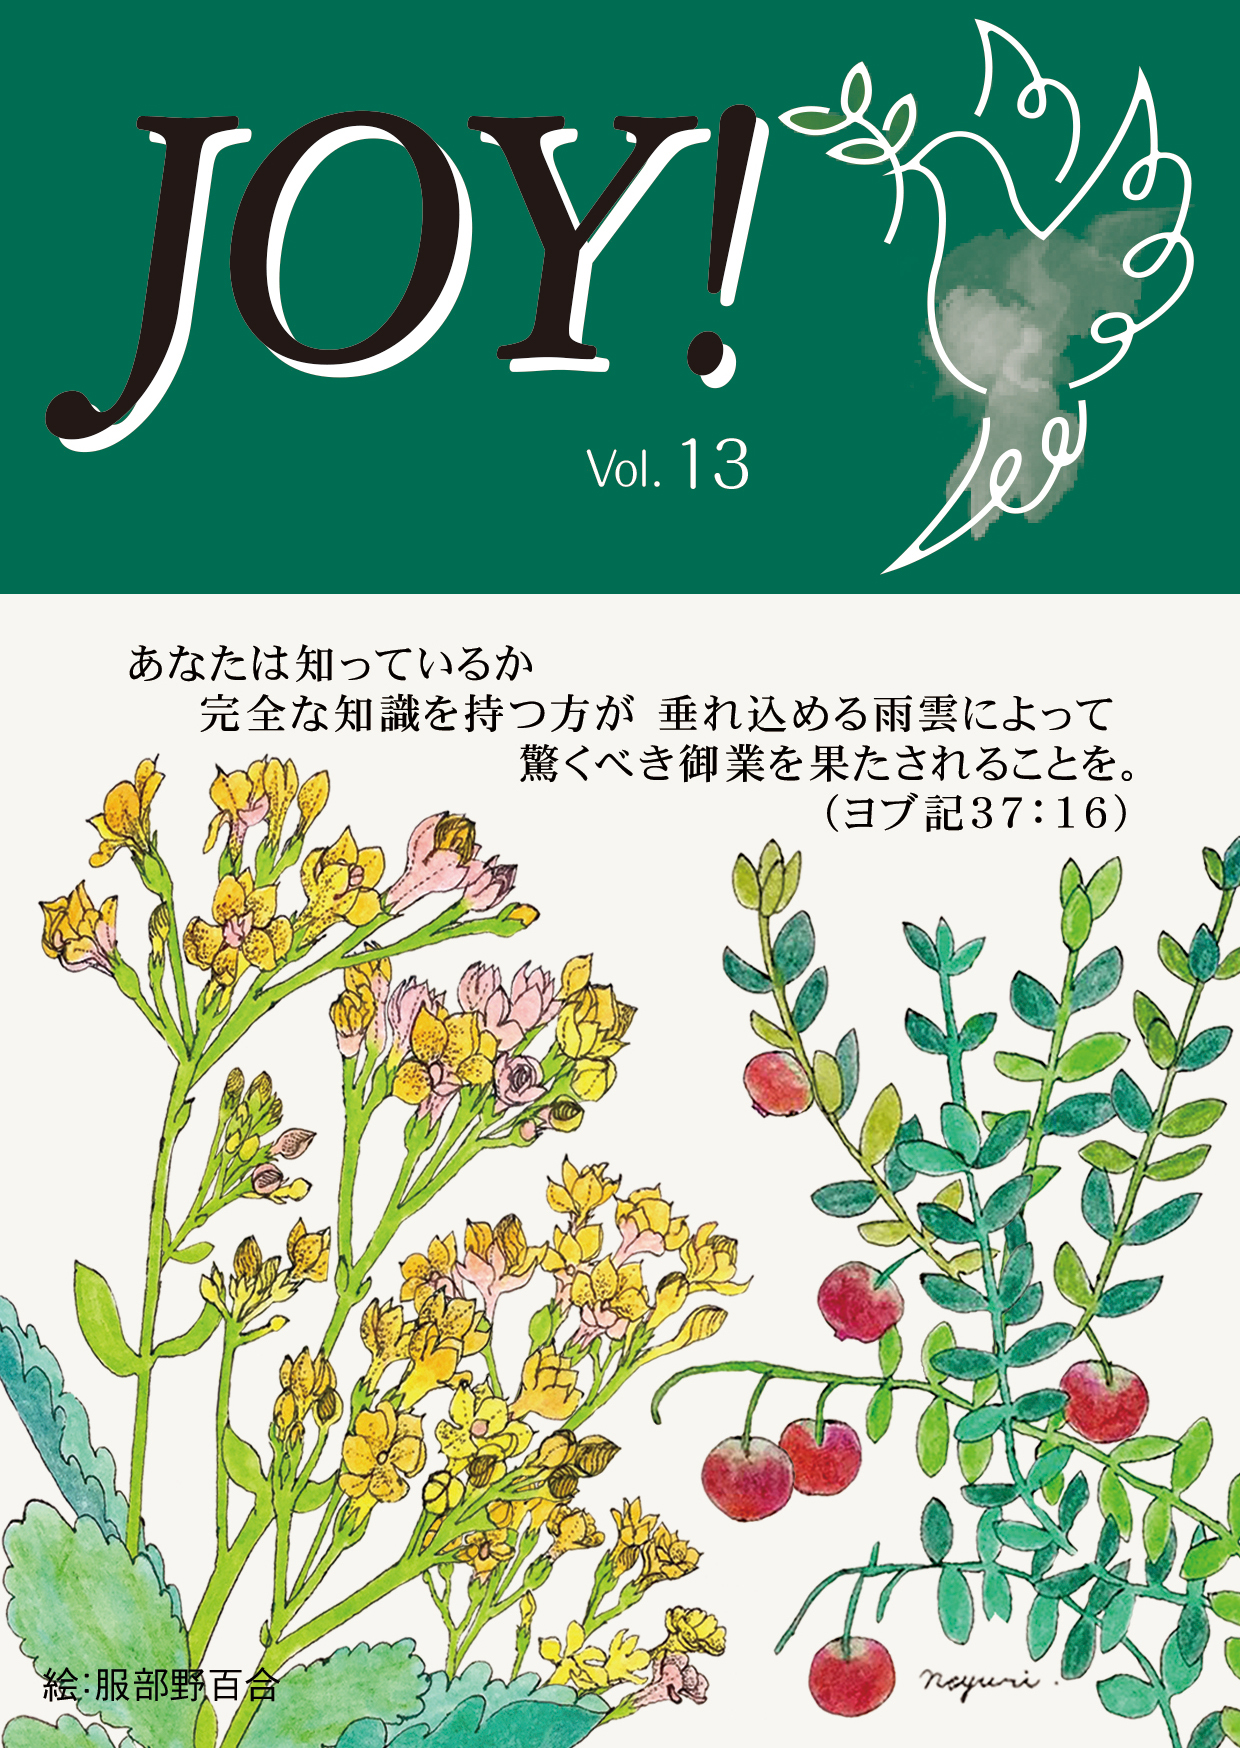 季刊紙 『JOY!』冬号配布中(Vol.13)